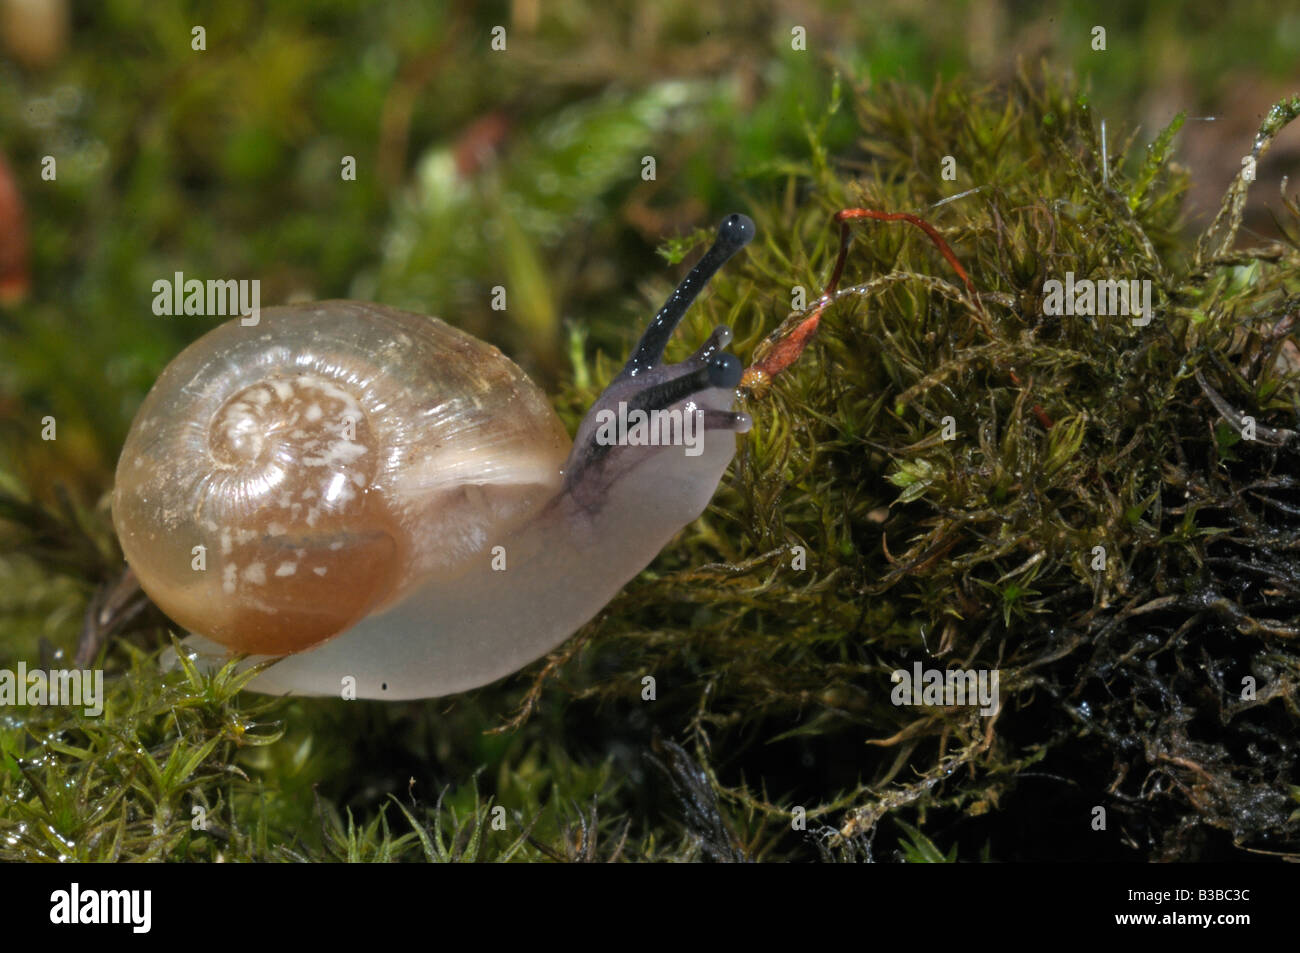 Escargot romain, les escargots escargot, escargots (Helix pomatia), 14 jours snail Banque D'Images